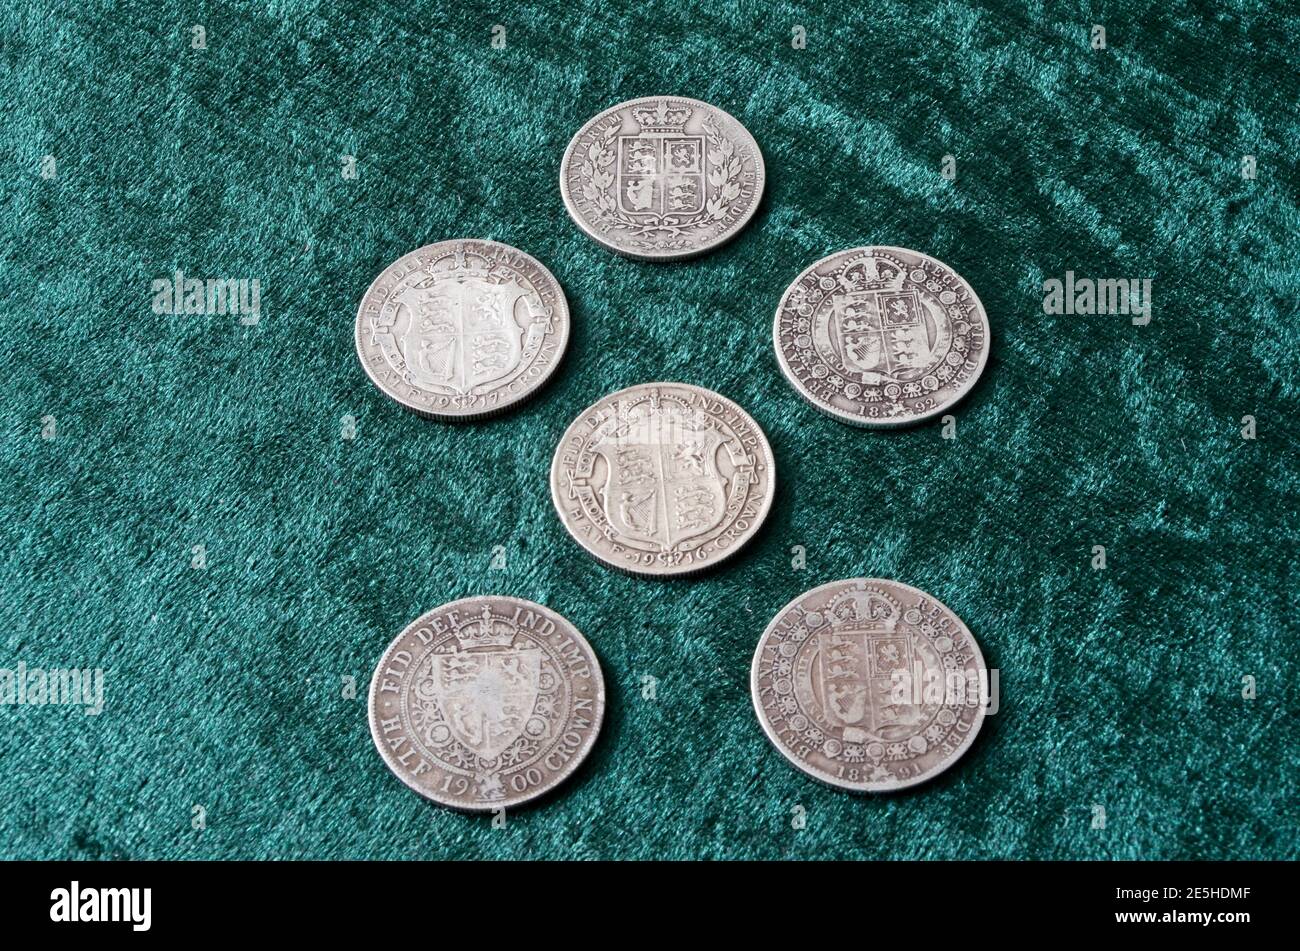 Reverso de plata esterlina británica ( 92.5%) Monedas de la mitad de la corona que van de la reina victoriana, Edward VII y George V Foto de stock